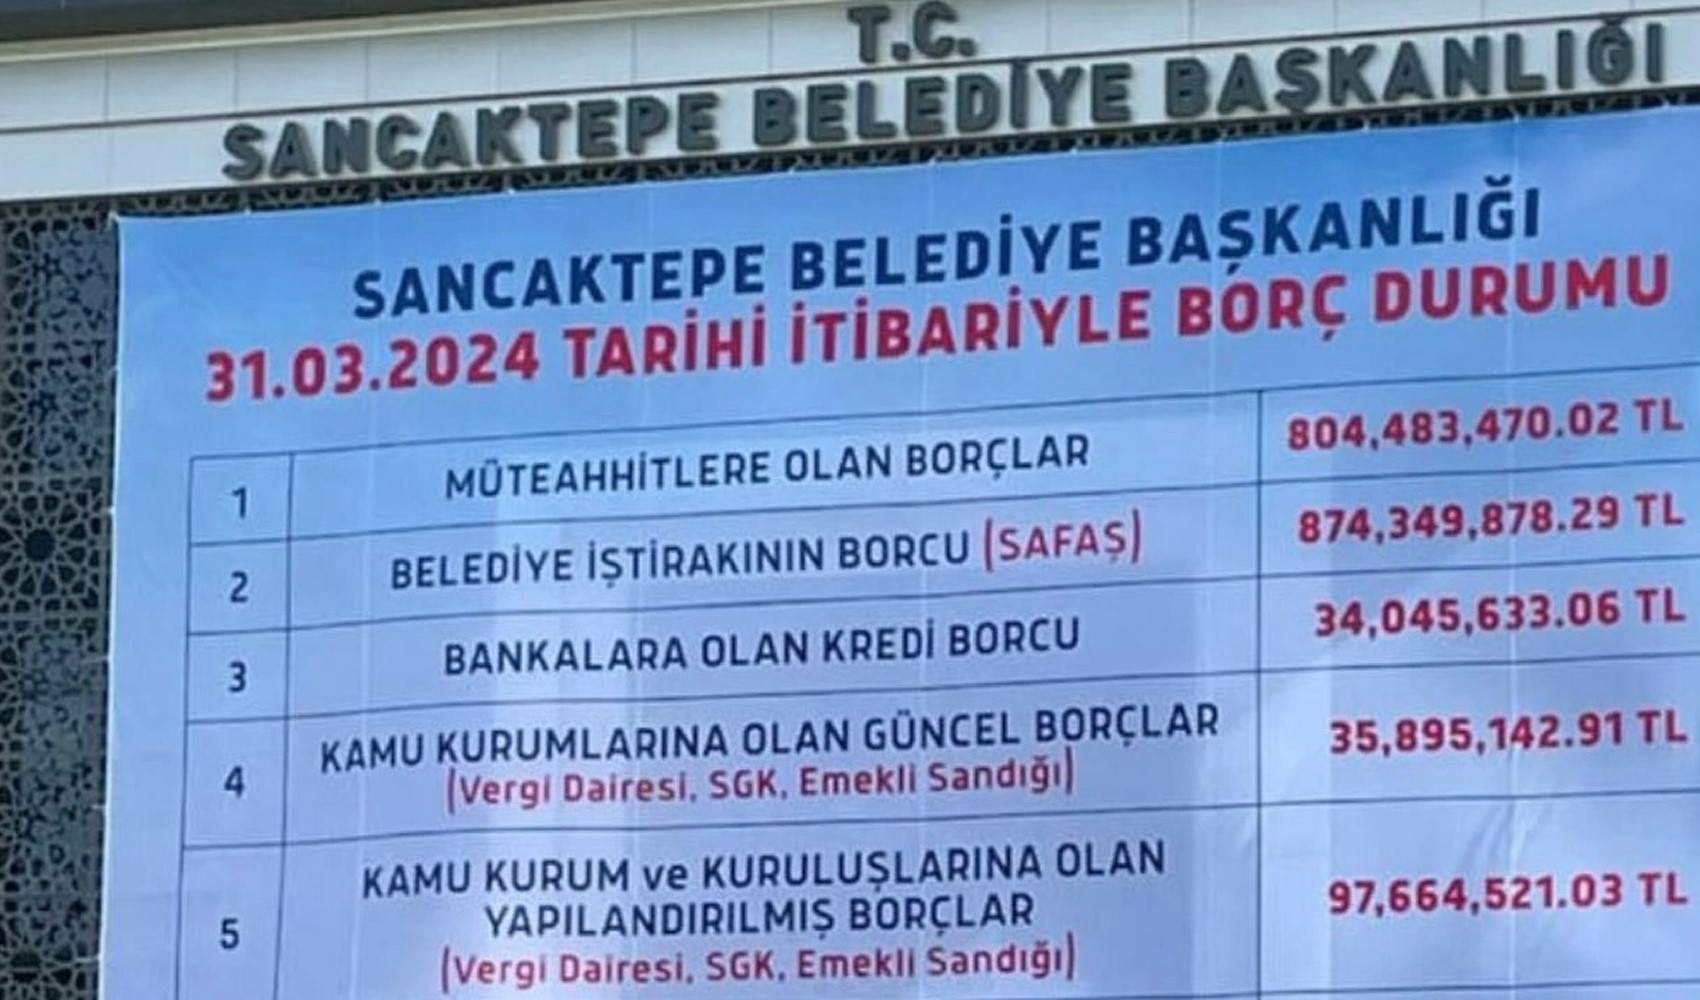 'Jakuzi' iddialarıyla gündeme gelen Sancaktepe Belediyesi’nin borcu dudak uçuklattı! Lüks başkanlık katı ortaya çıktı...